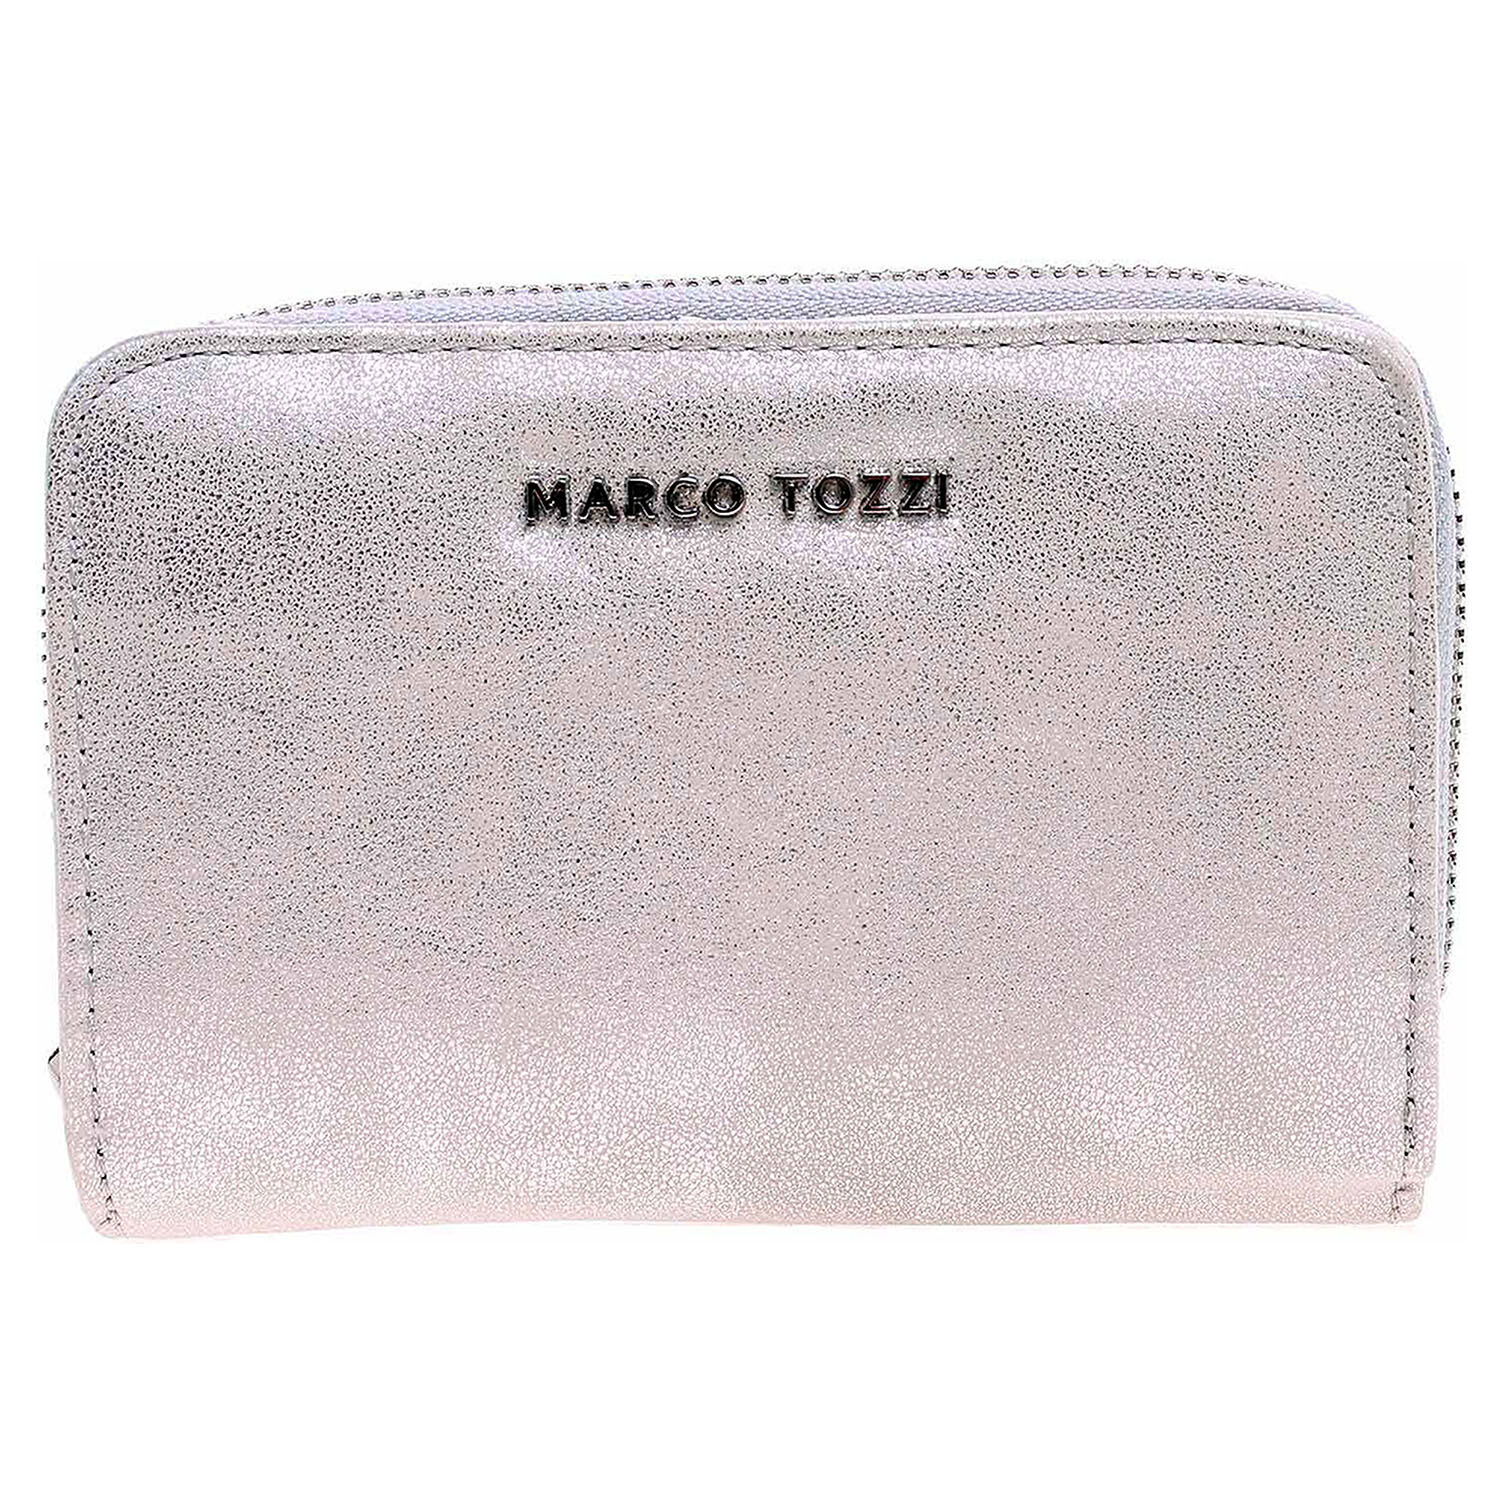 Marco Tozzi dámská peněženka 2-61133-22 silver 1